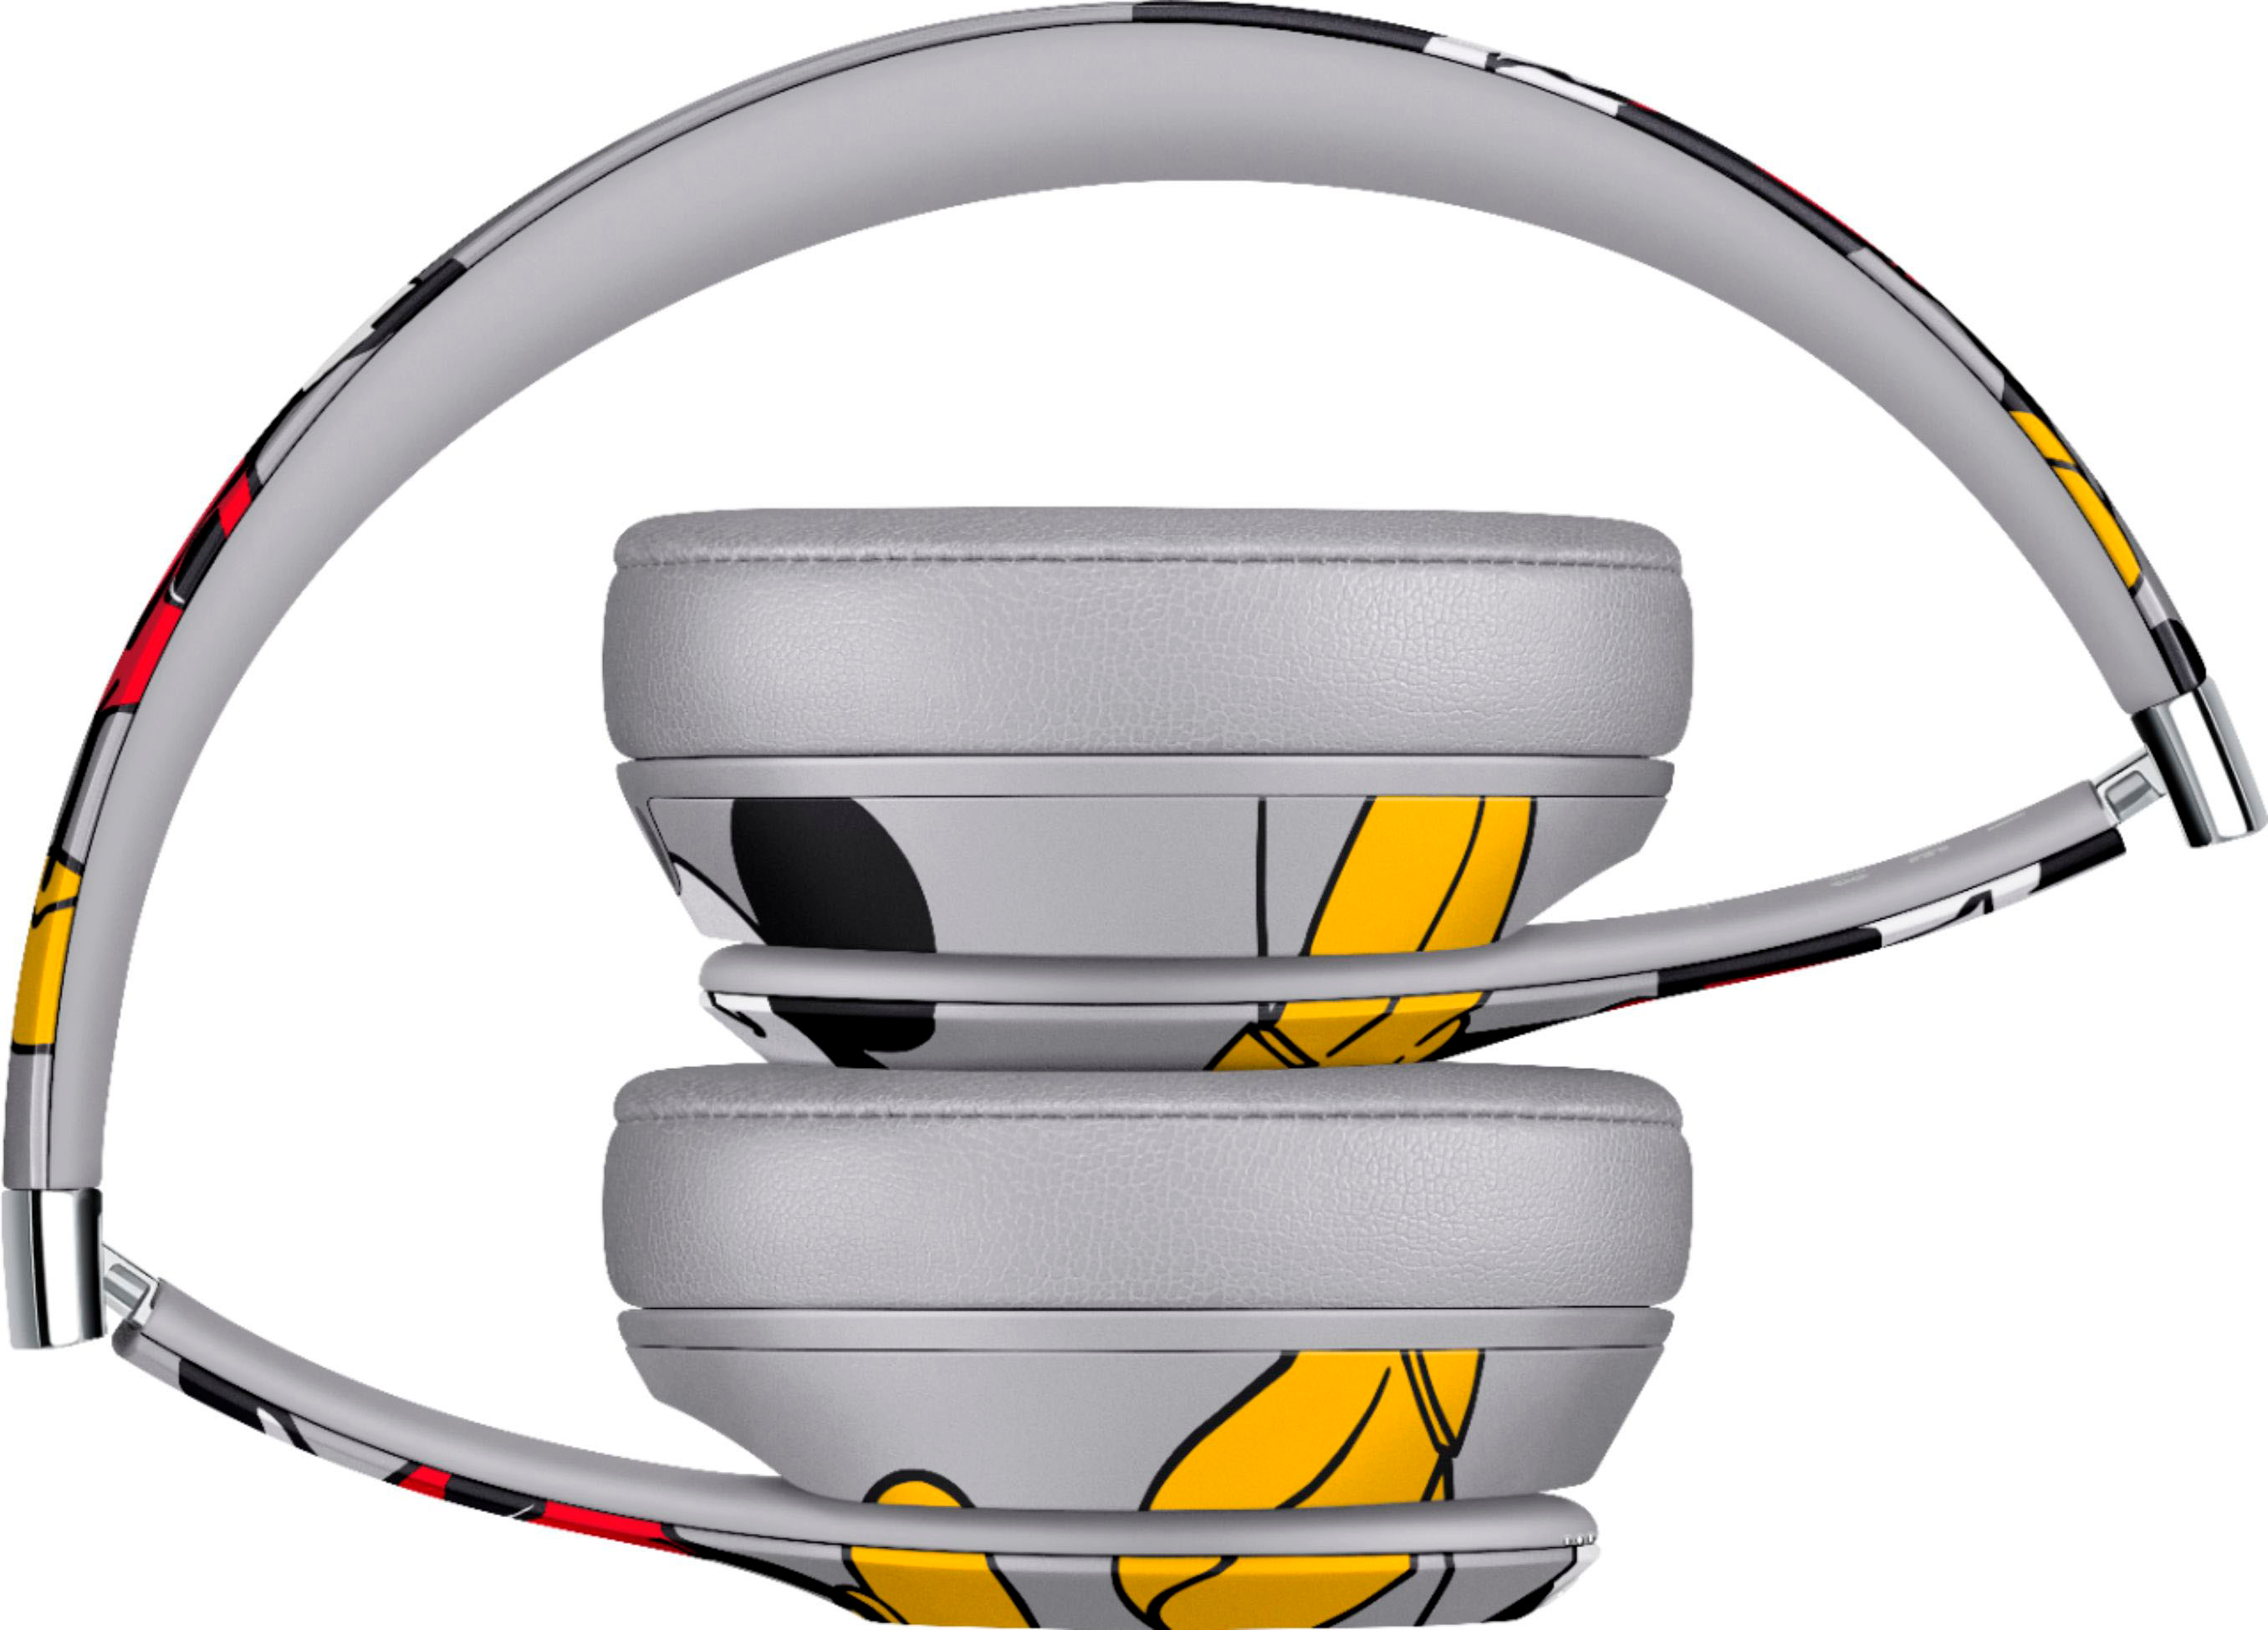 beats solo 3 wireless headphones best buy